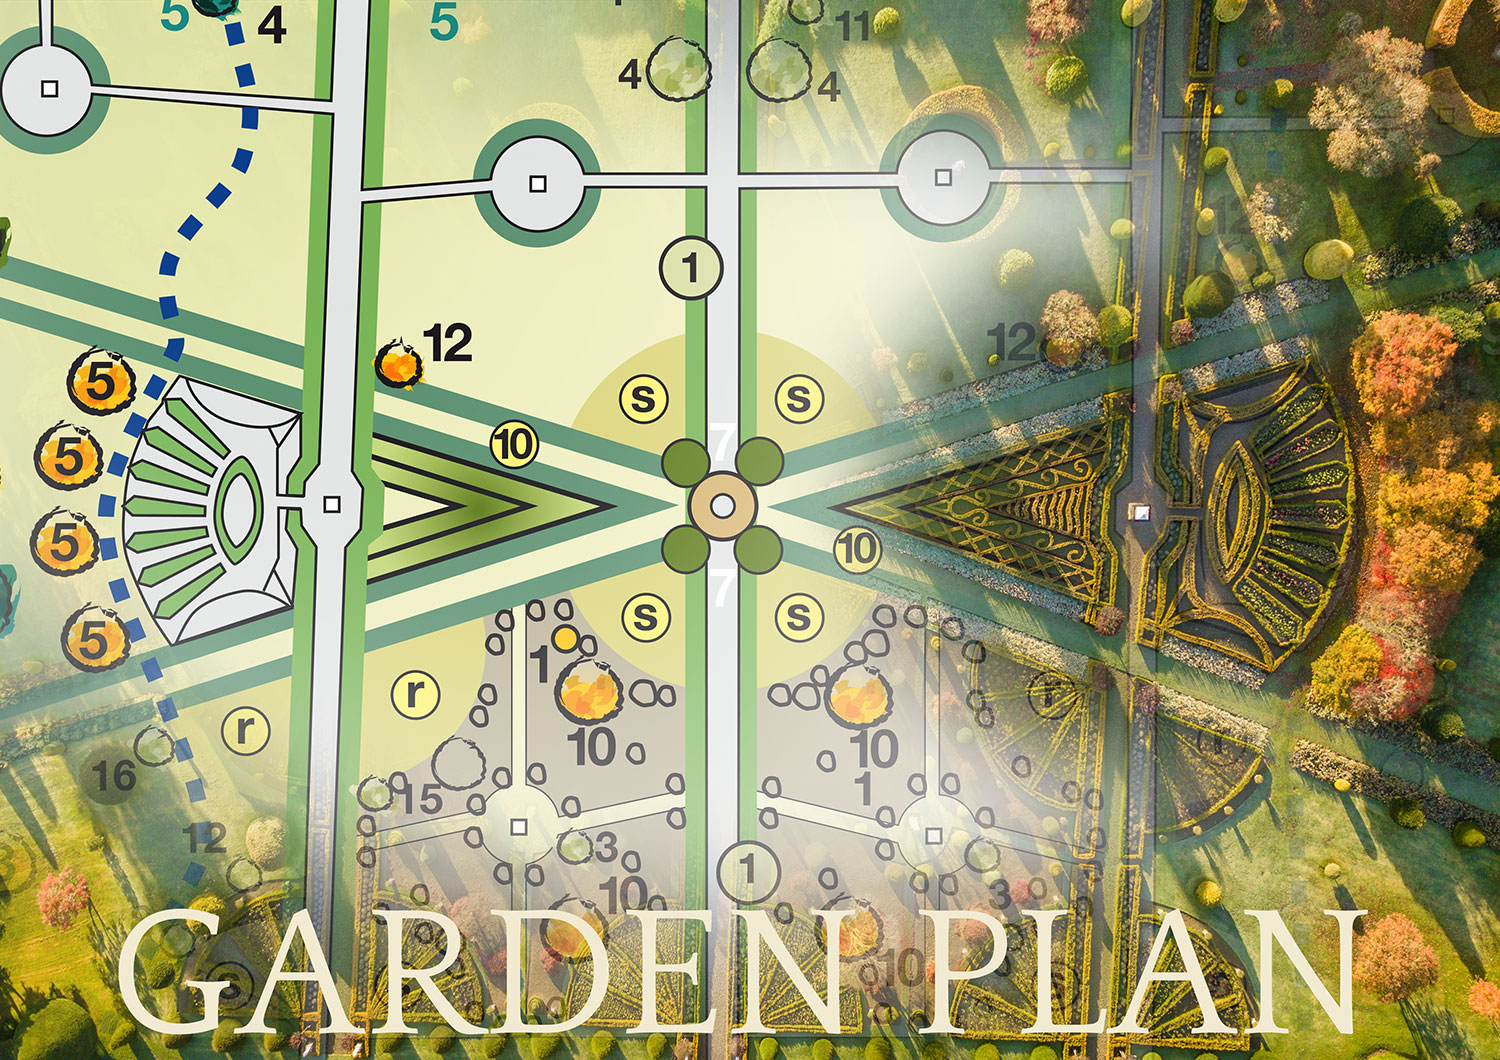 Garden Plan